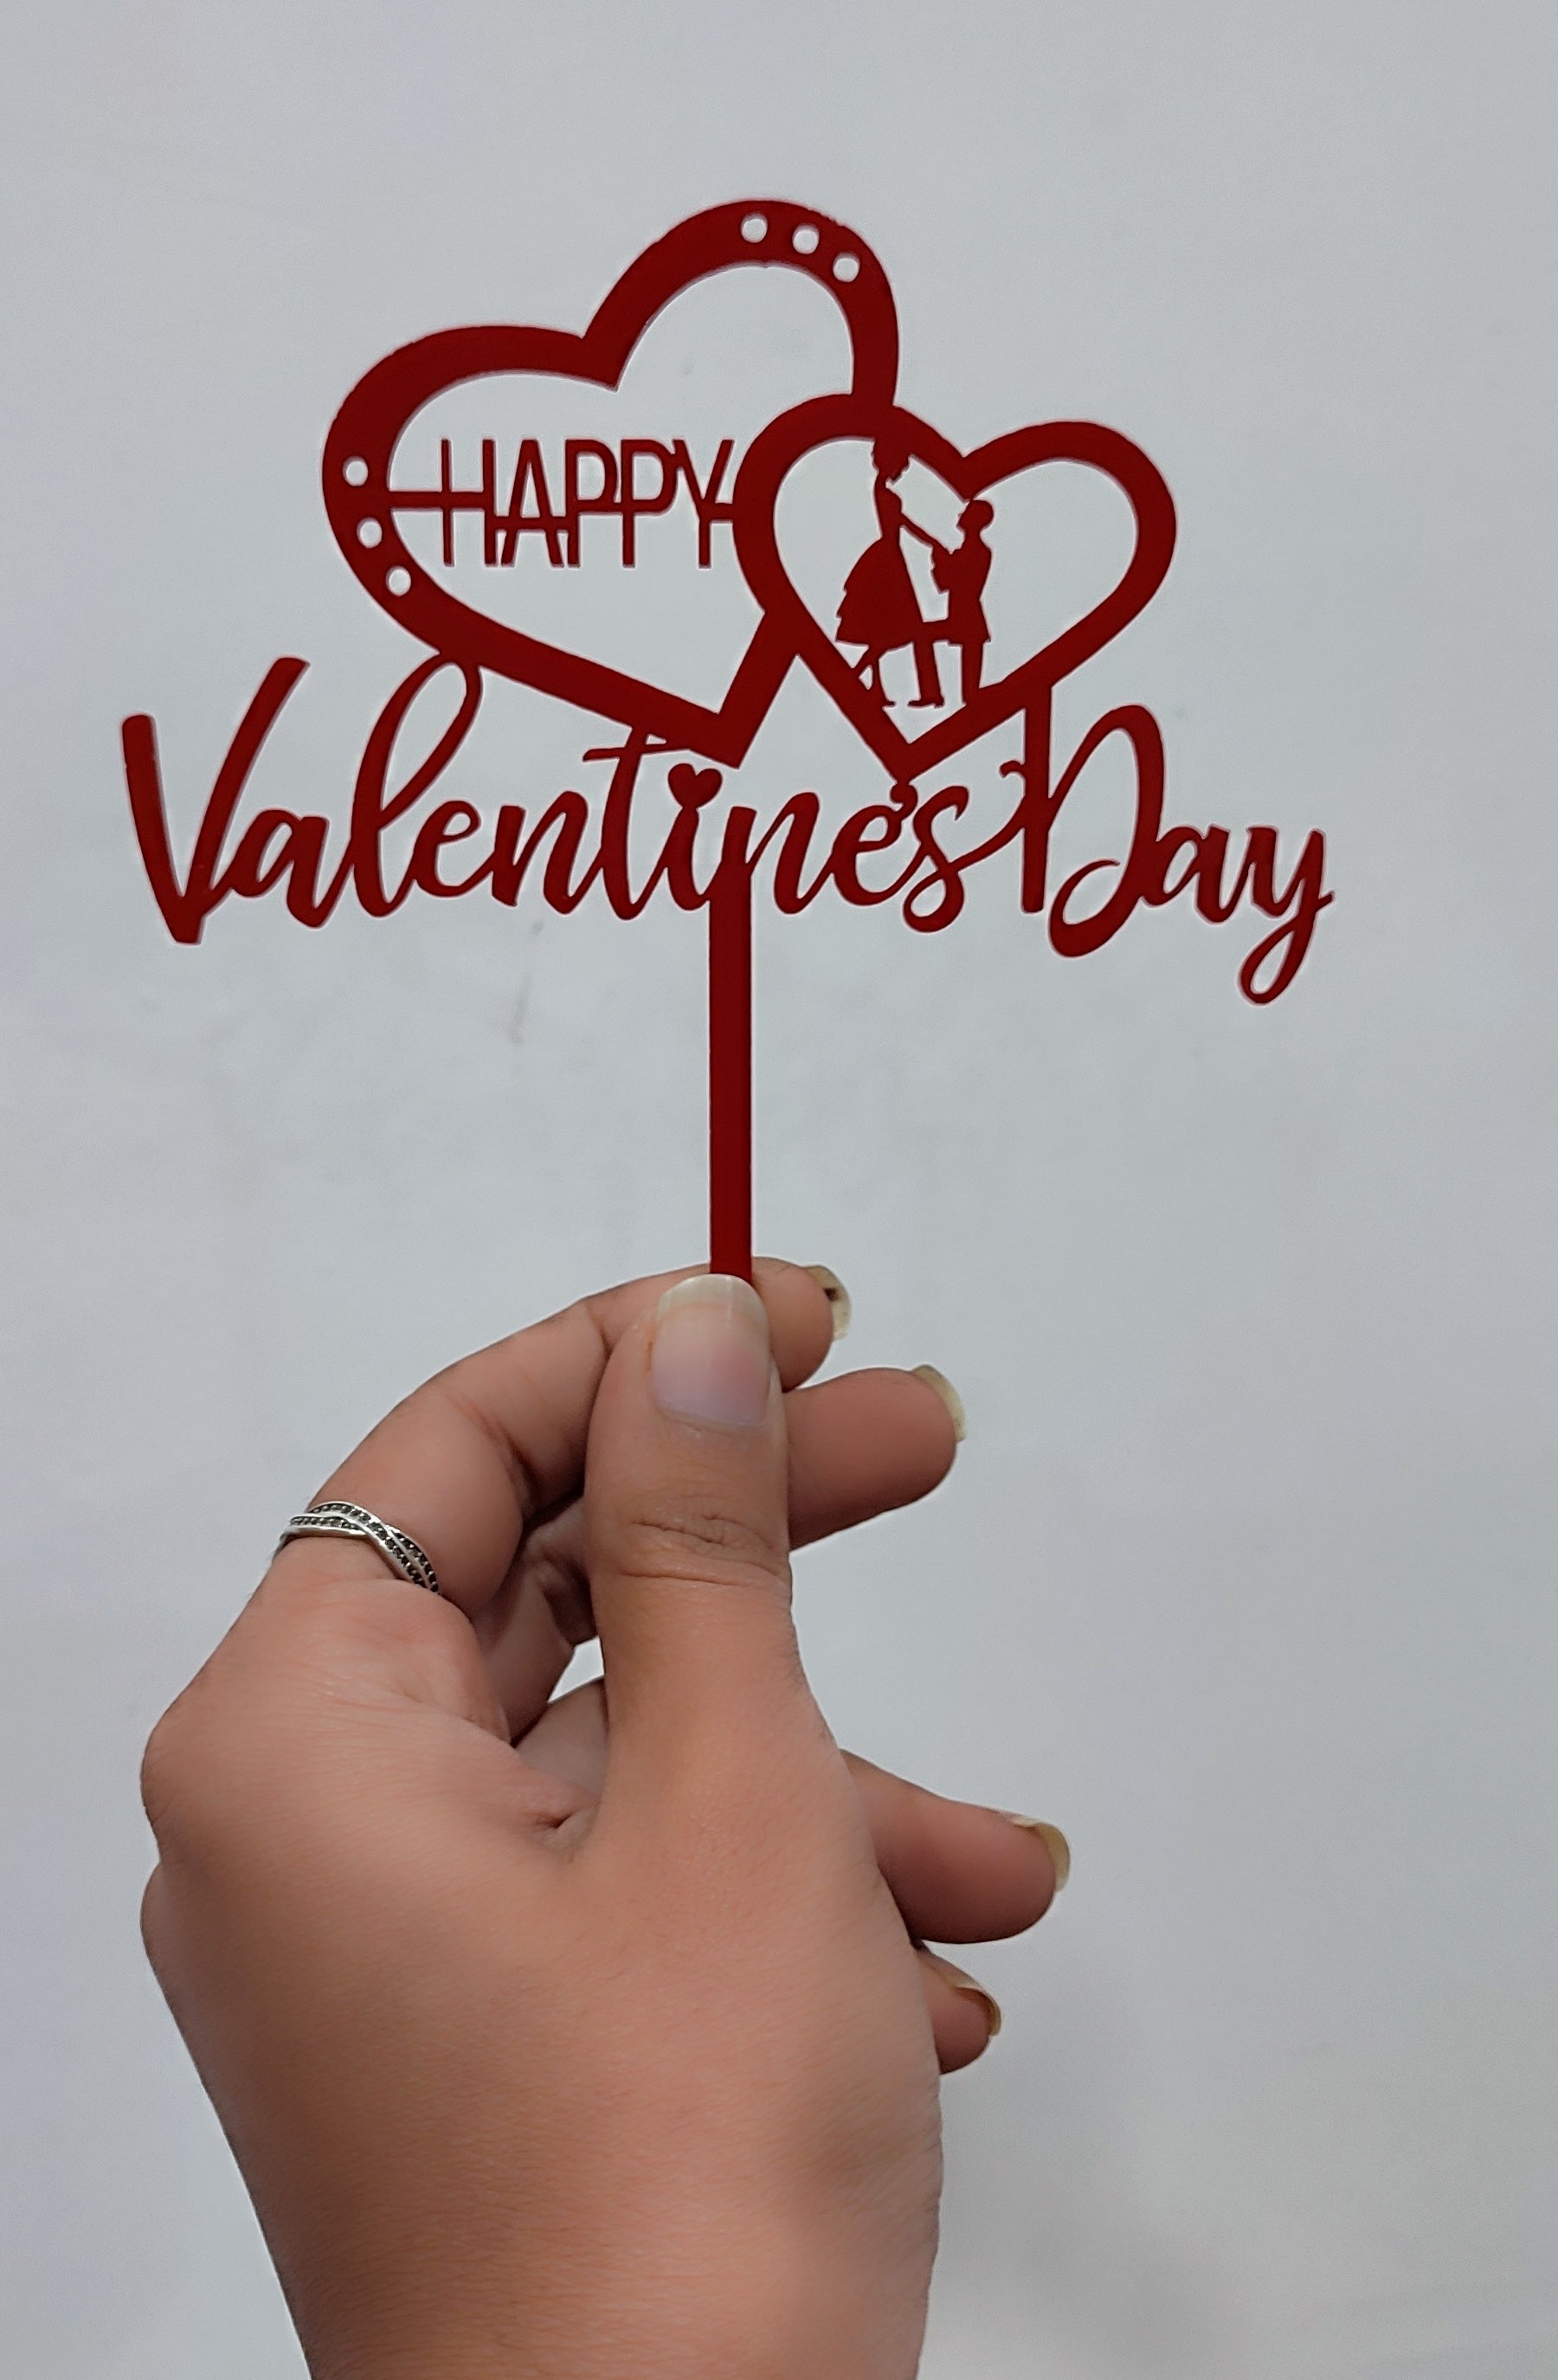 Heart Happy Valentine's day – Bakeworld Retails Pvt Ltd